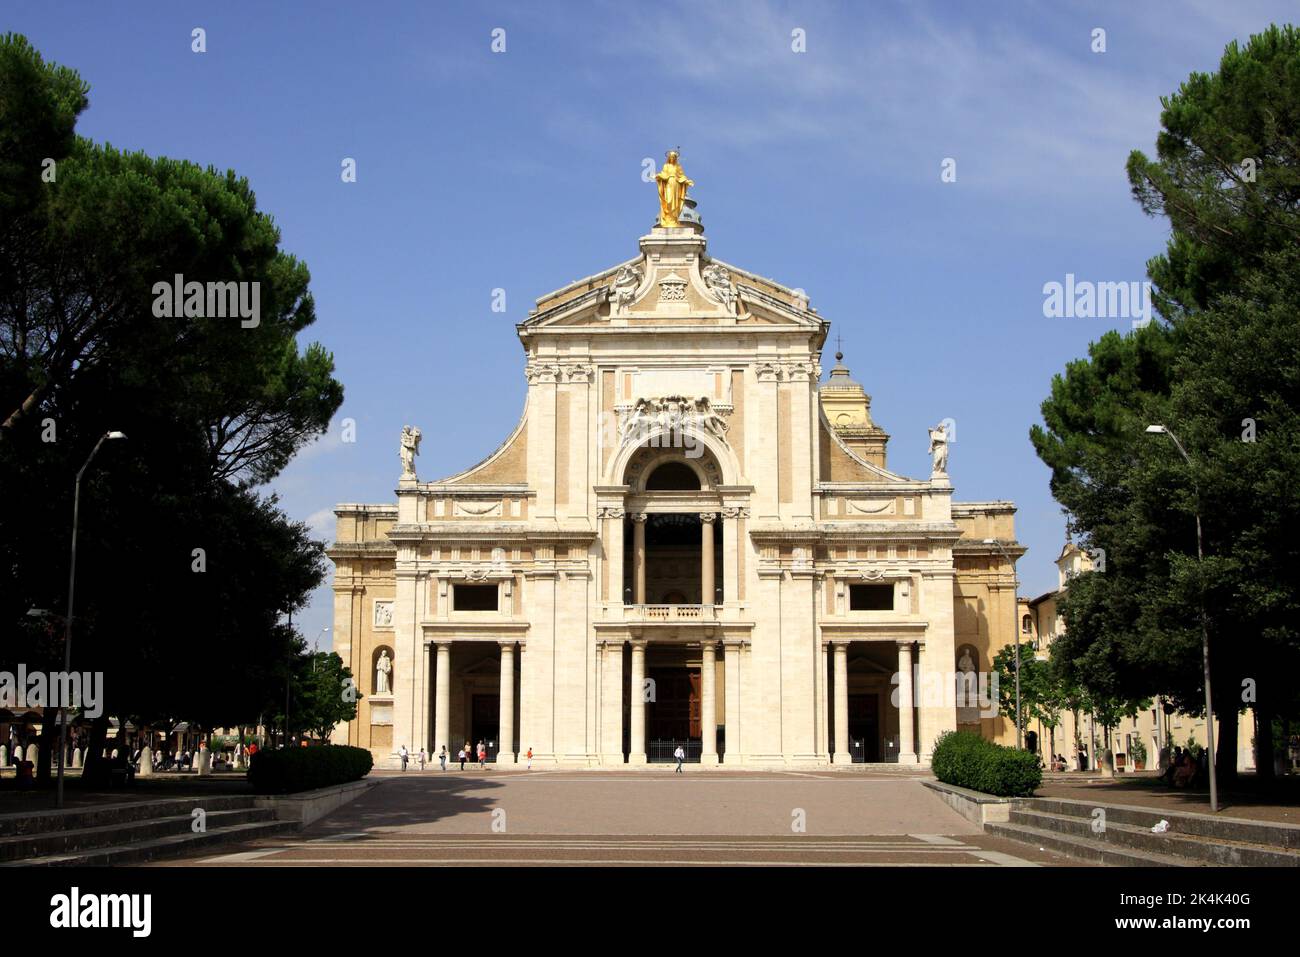 Façade de la basilique Santa Maria degli angeli datant du 16th siècle, église Sainte Marie des Anges, Assise, Ombrie, Italie Banque D'Images